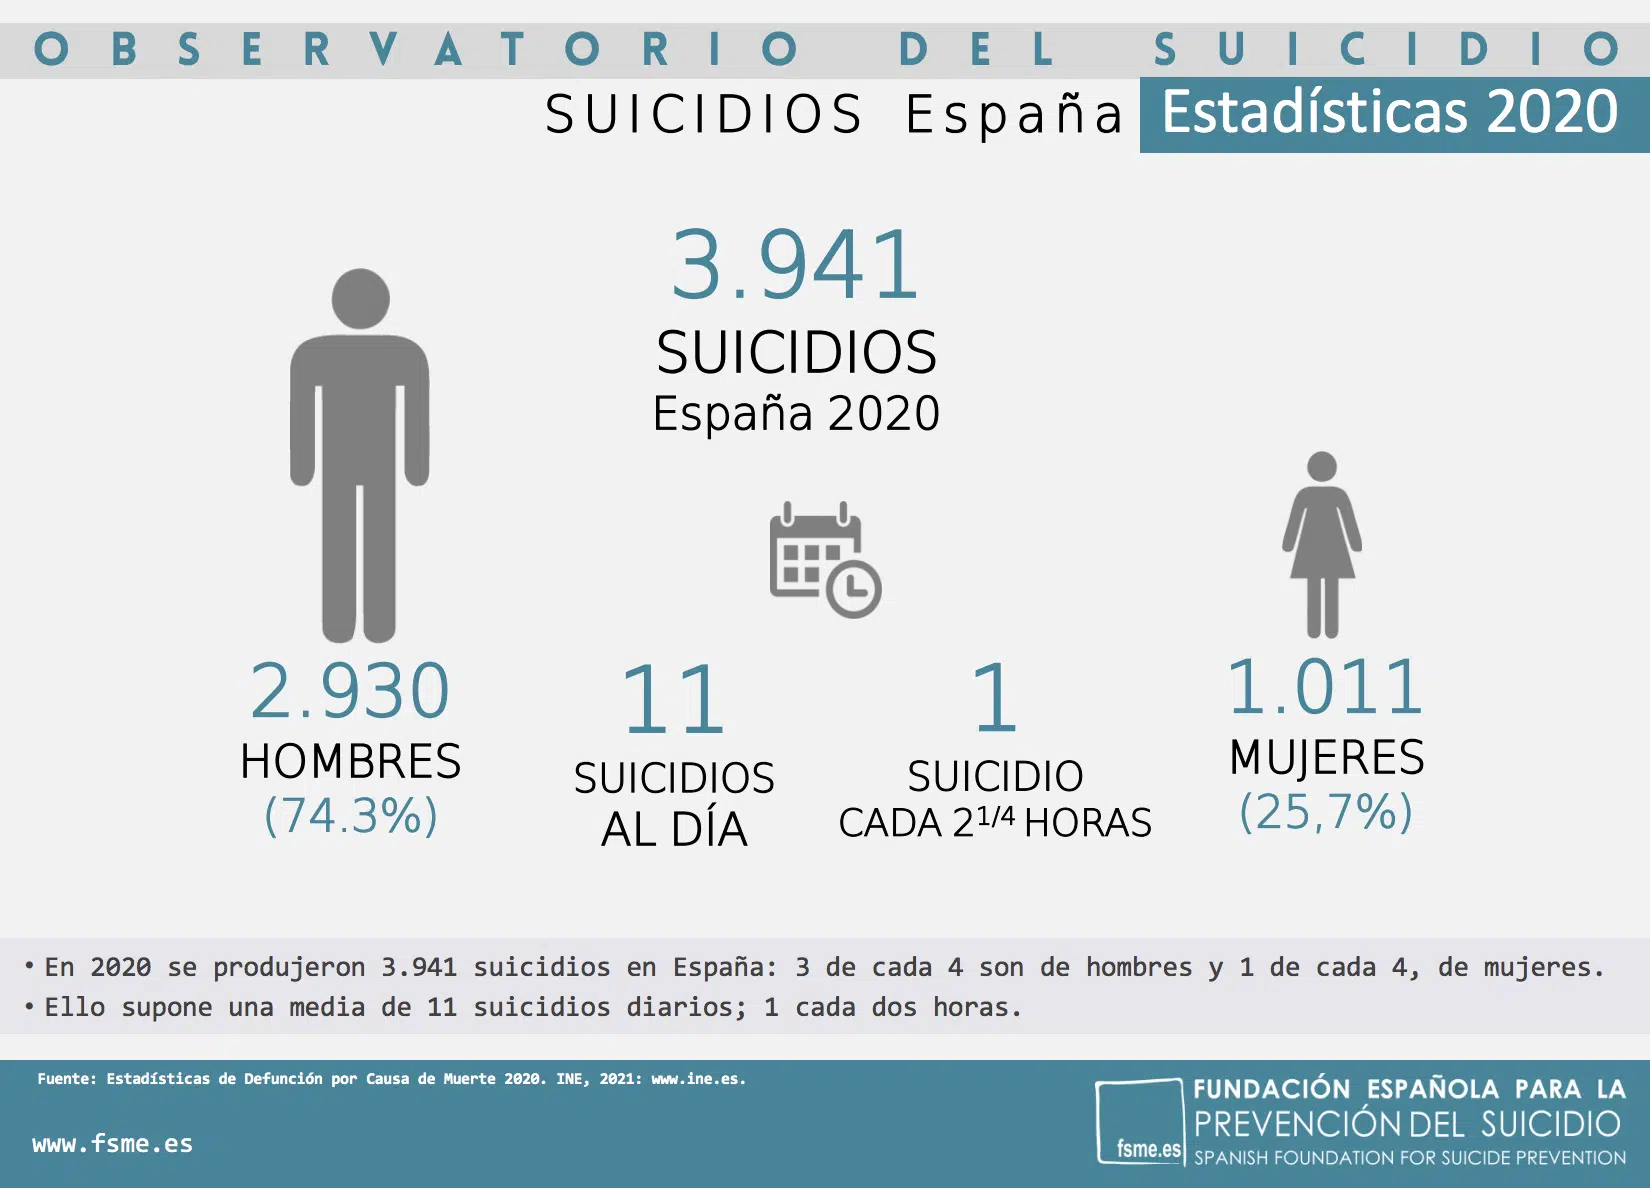 Hablar del suicidio para abordar su prevención: En 2020 en España se suicidaron 3.941 personas, 11 al día